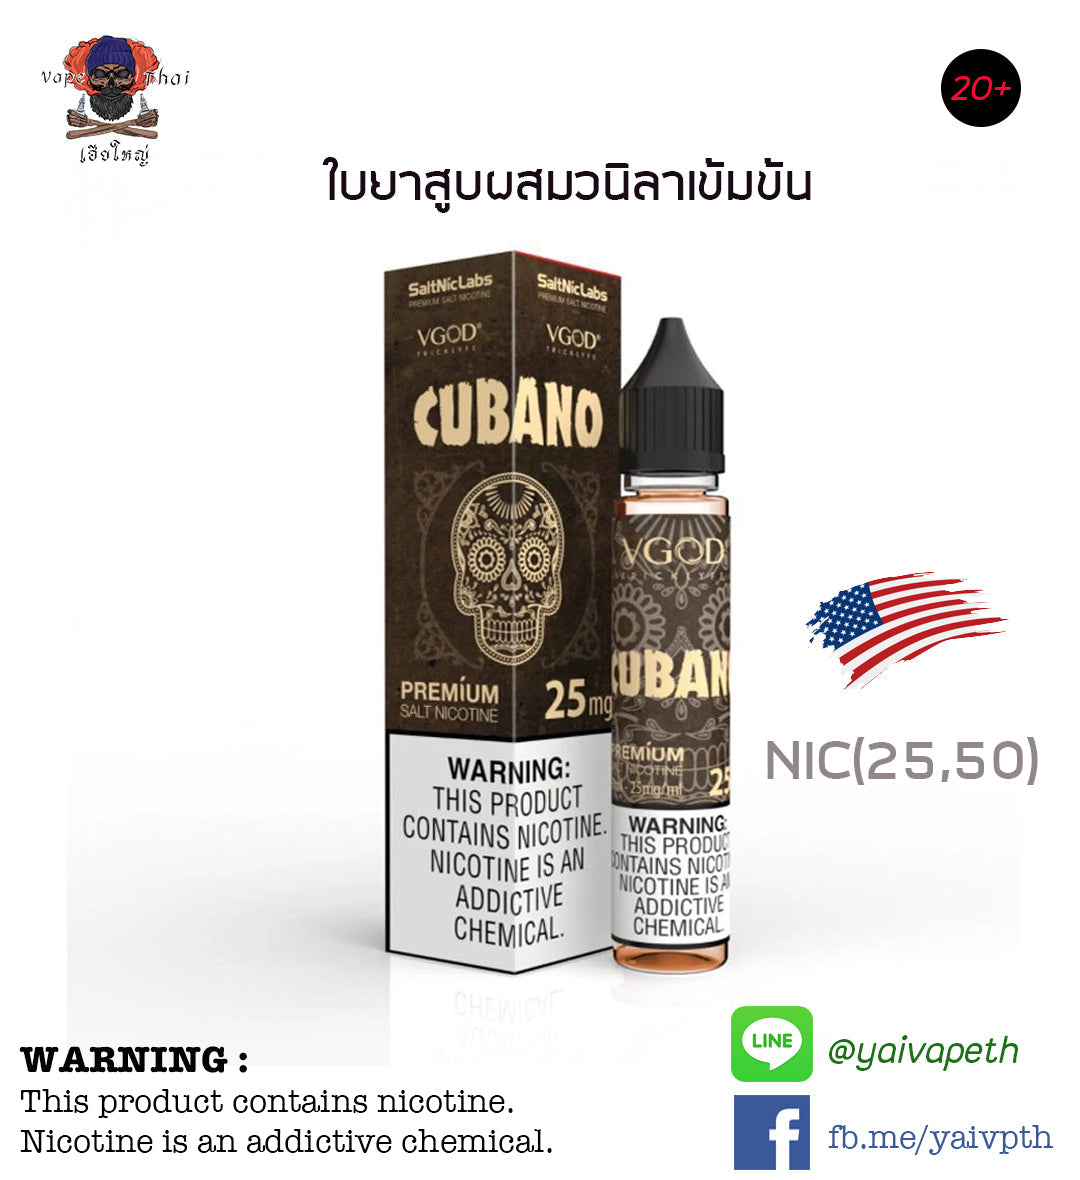 ซิก้าร์วนิลา - VGOD Cubano Premium SaltNic 30 ml & NIC 25,50 mg (U.S.A.) ของแท้ 100% [ไม่เย็น] - YAIVAPETHAI  No.1